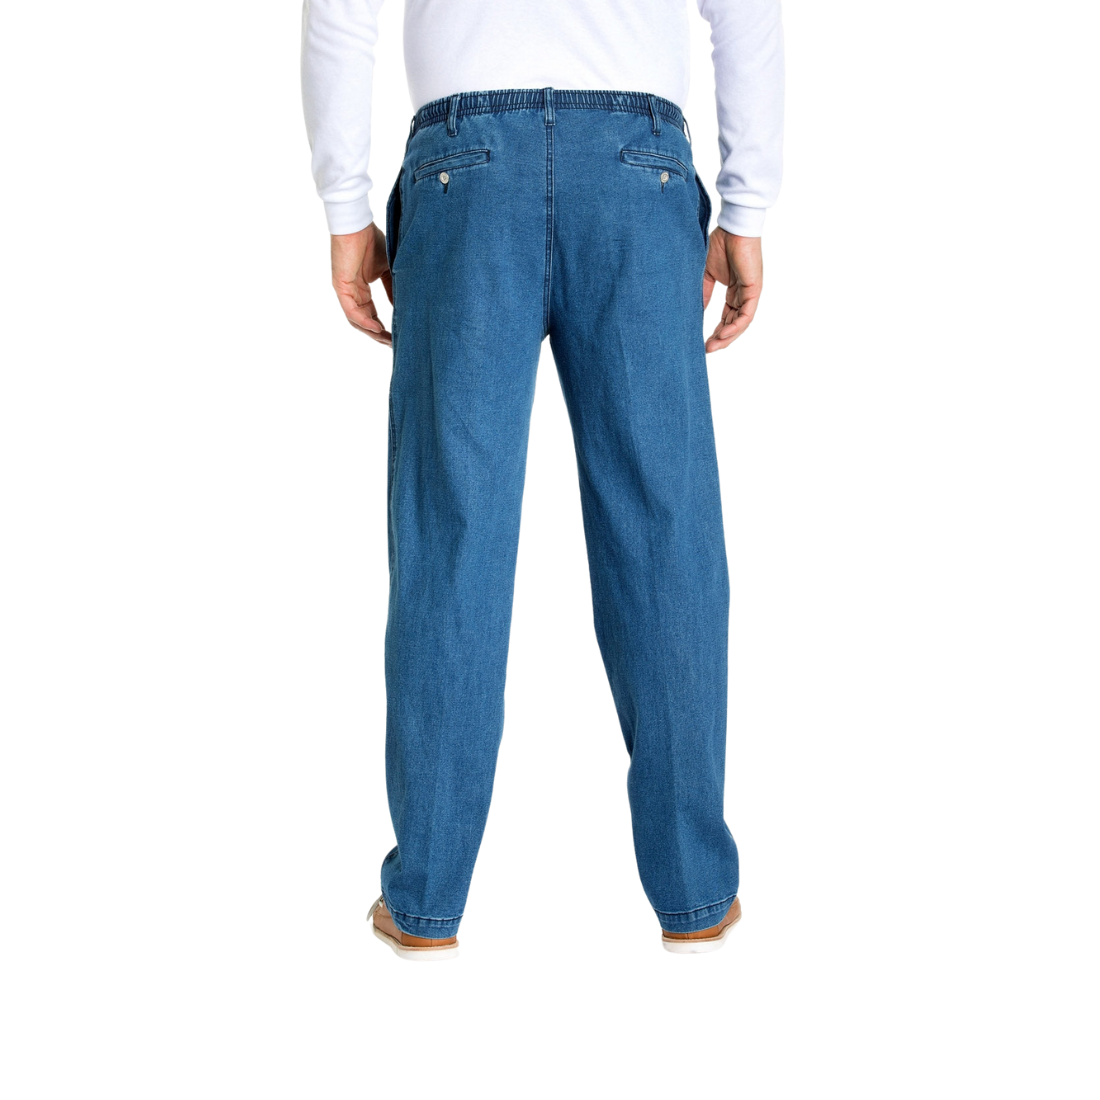 Ipswich Denim Jean Denim Mens Jeans by Breakaway | The Bloke Shop